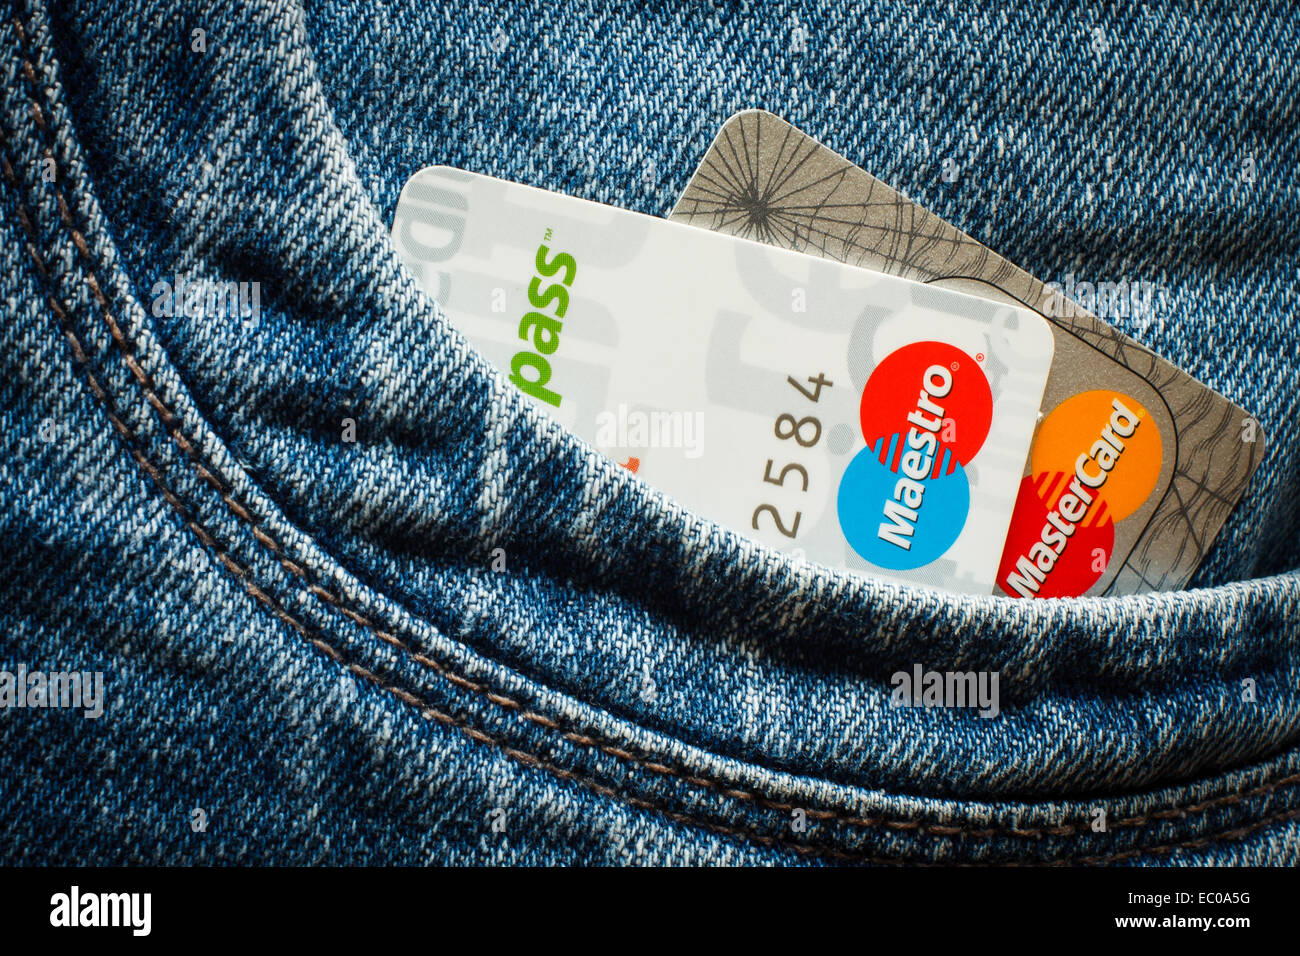 DANZIG, POLEN - 16. APRIL 2014. Kreditkarten mit Paypass-Technologie. Nur zur redaktionellen Verwendung Stockfoto